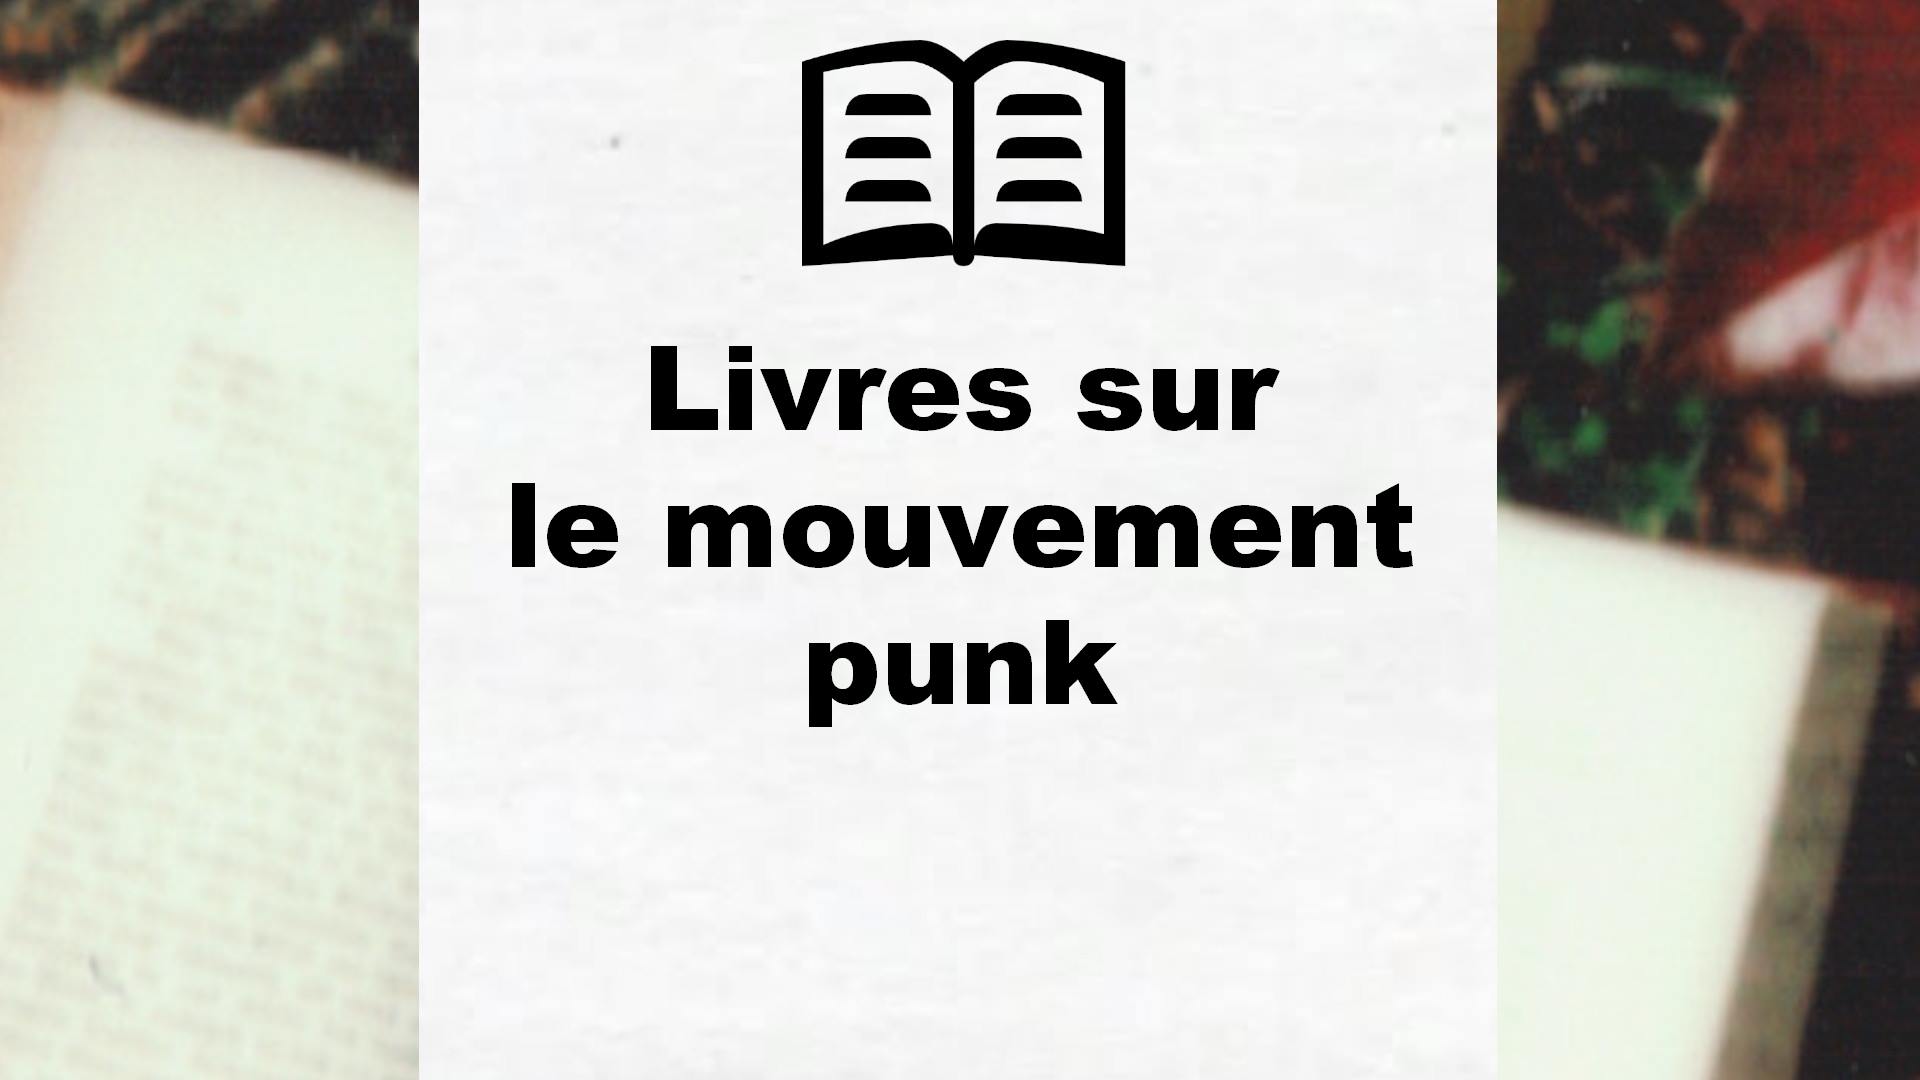 Livres sur le mouvement punk